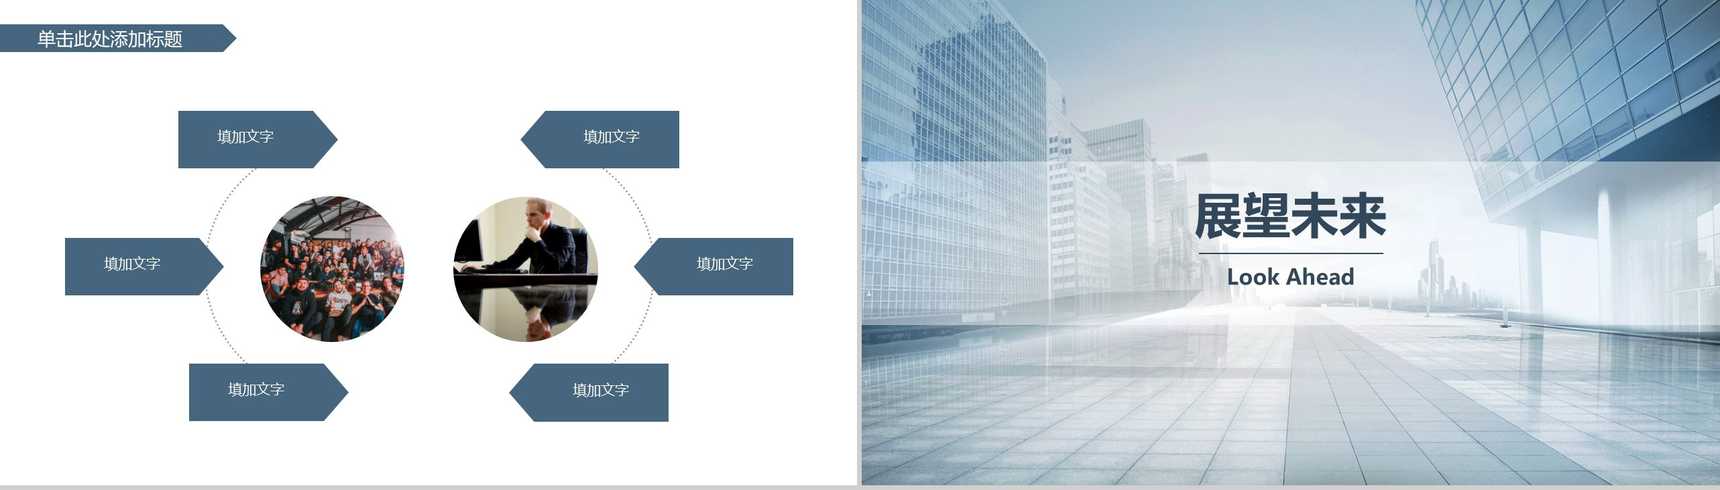 简约商务都市风格企业简介产品介绍PPT模板-8